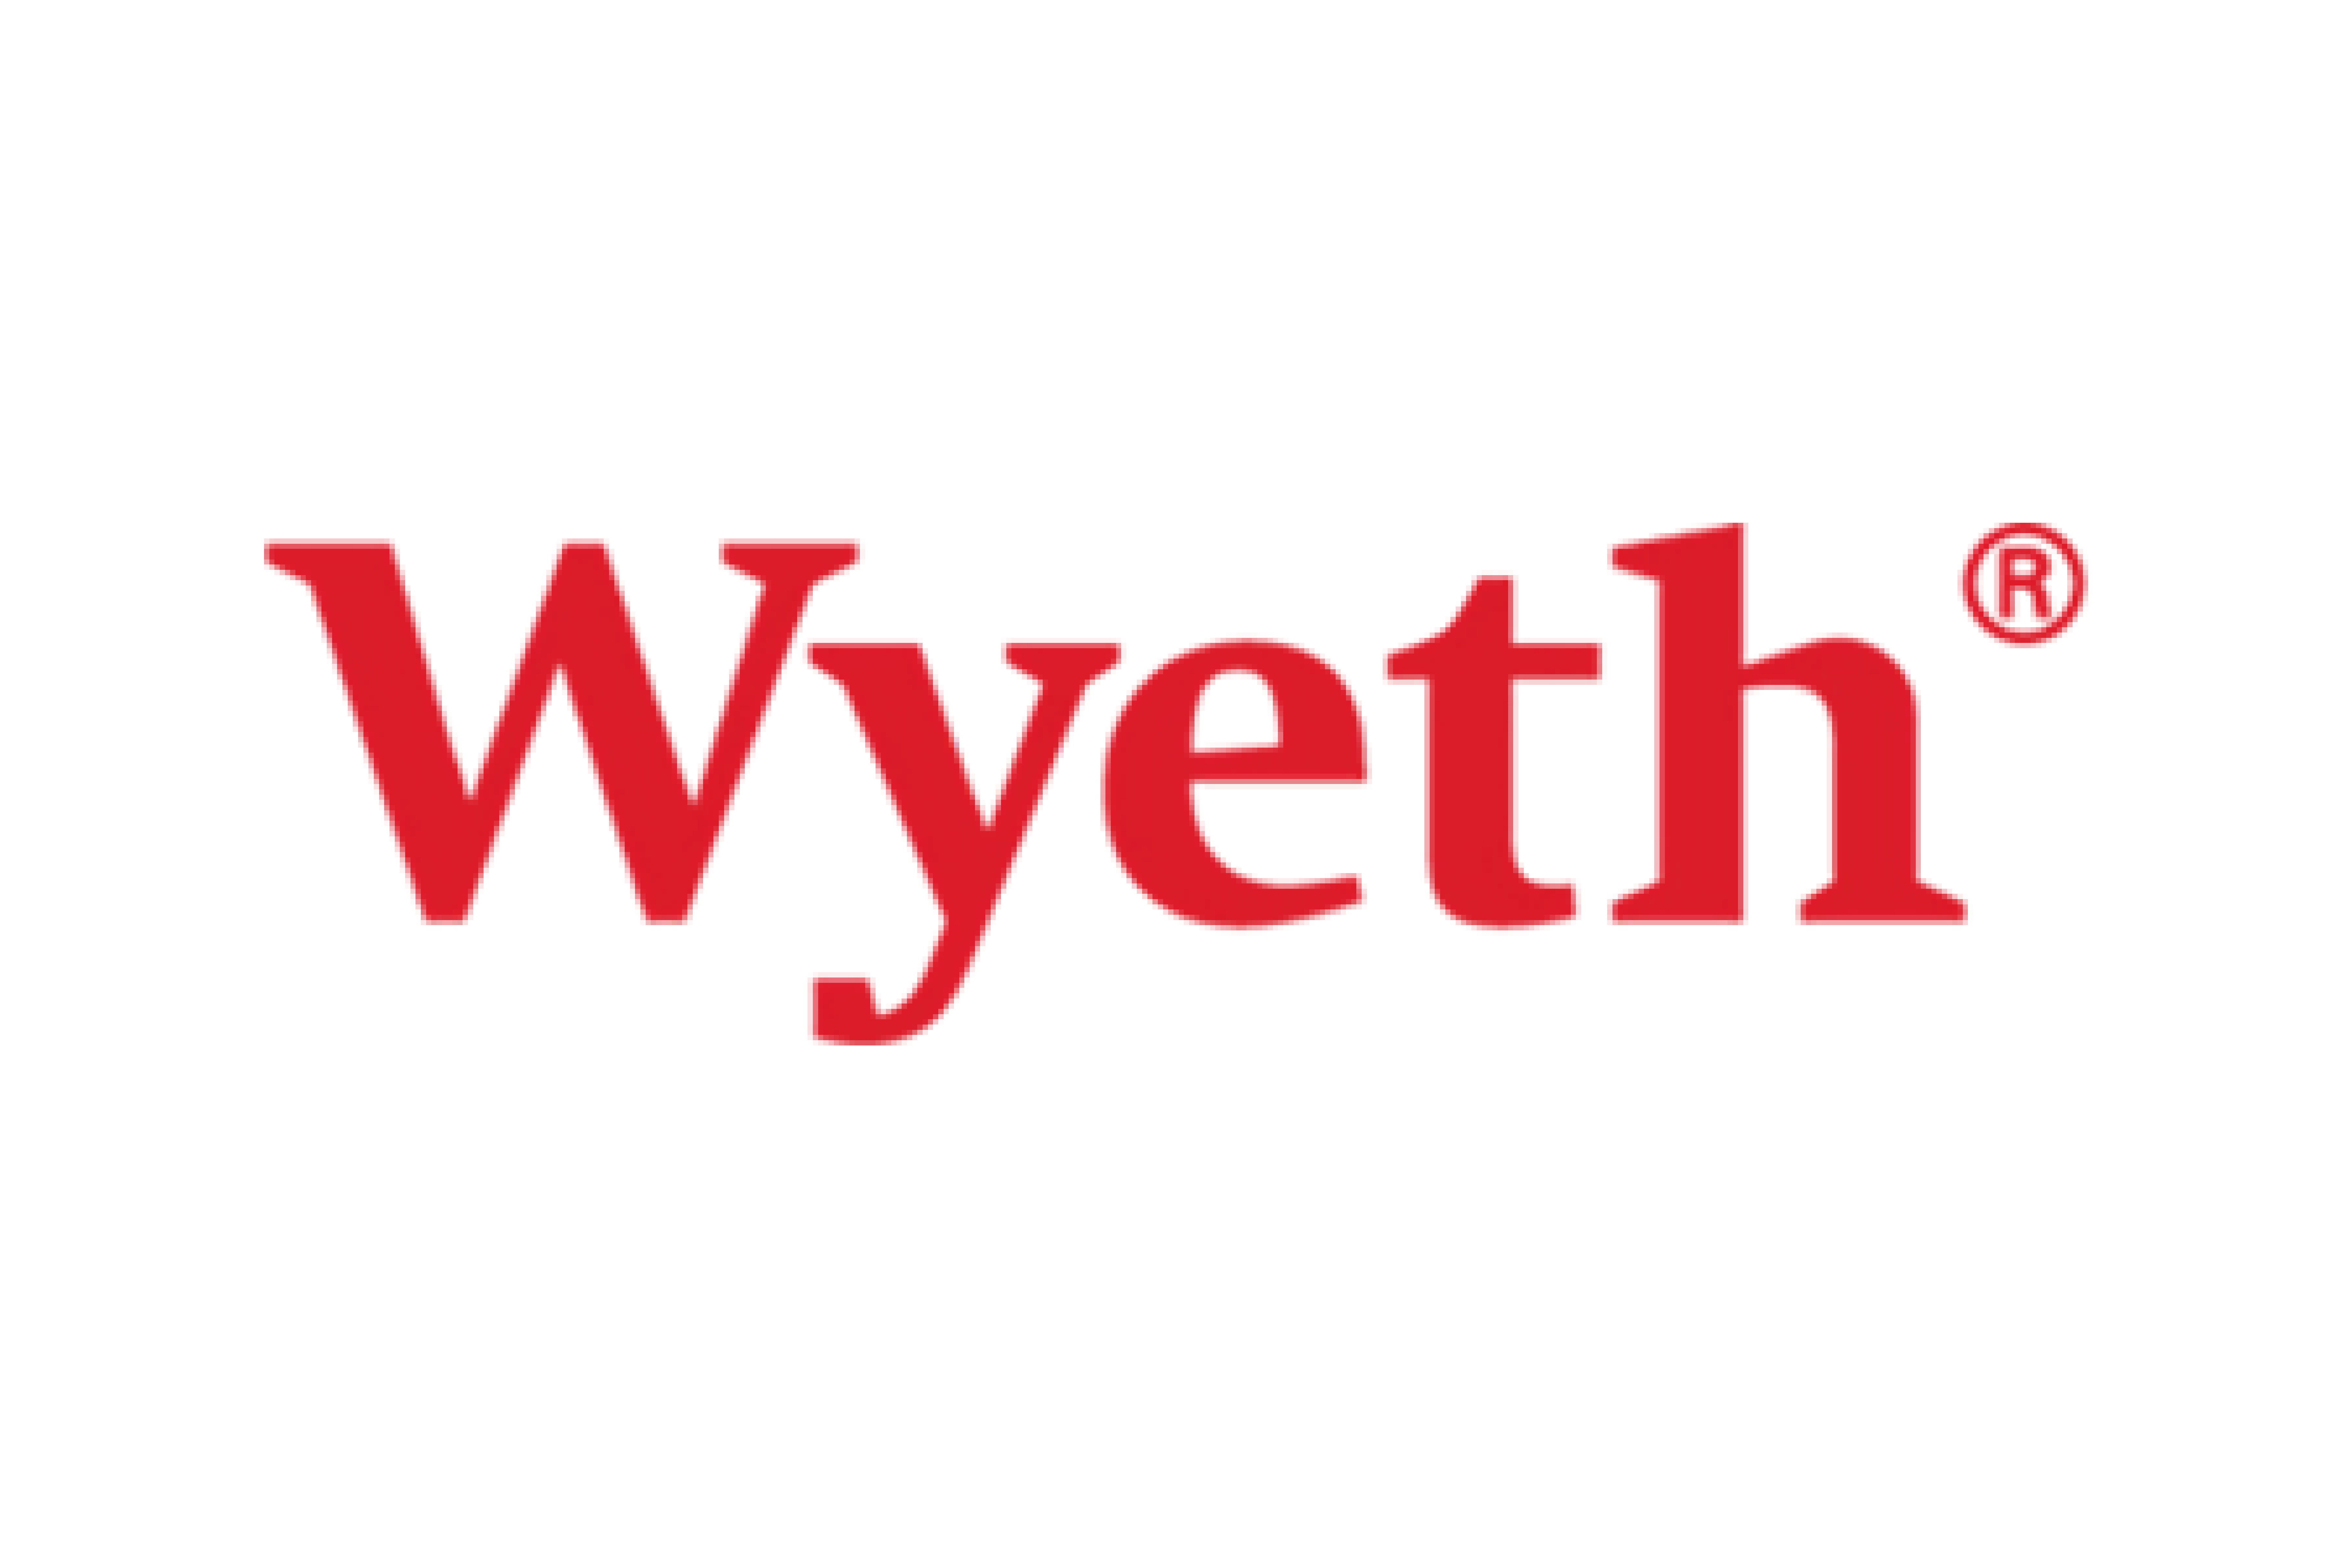 Wyeth